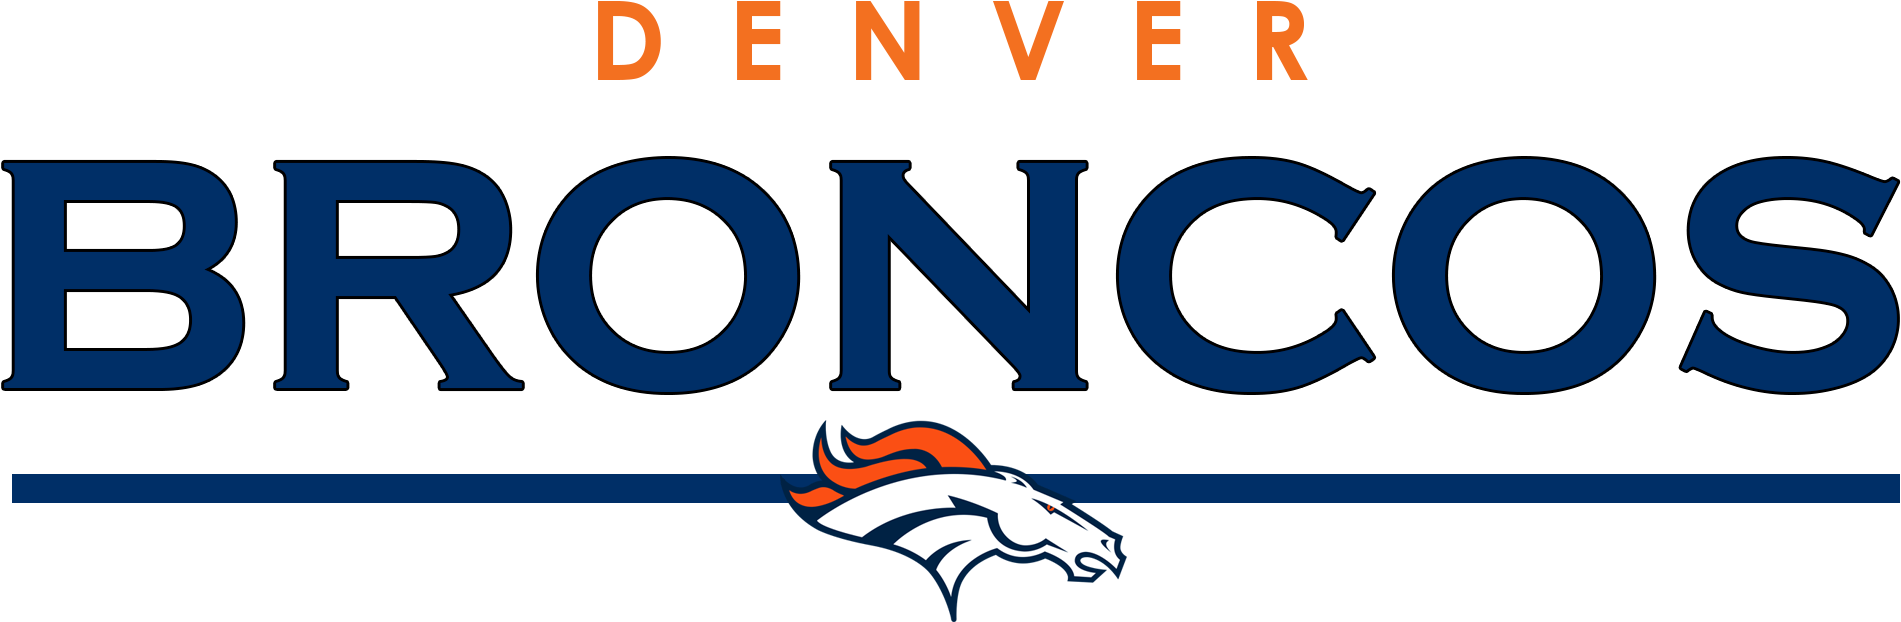 Denver Broncos Background PNG Image